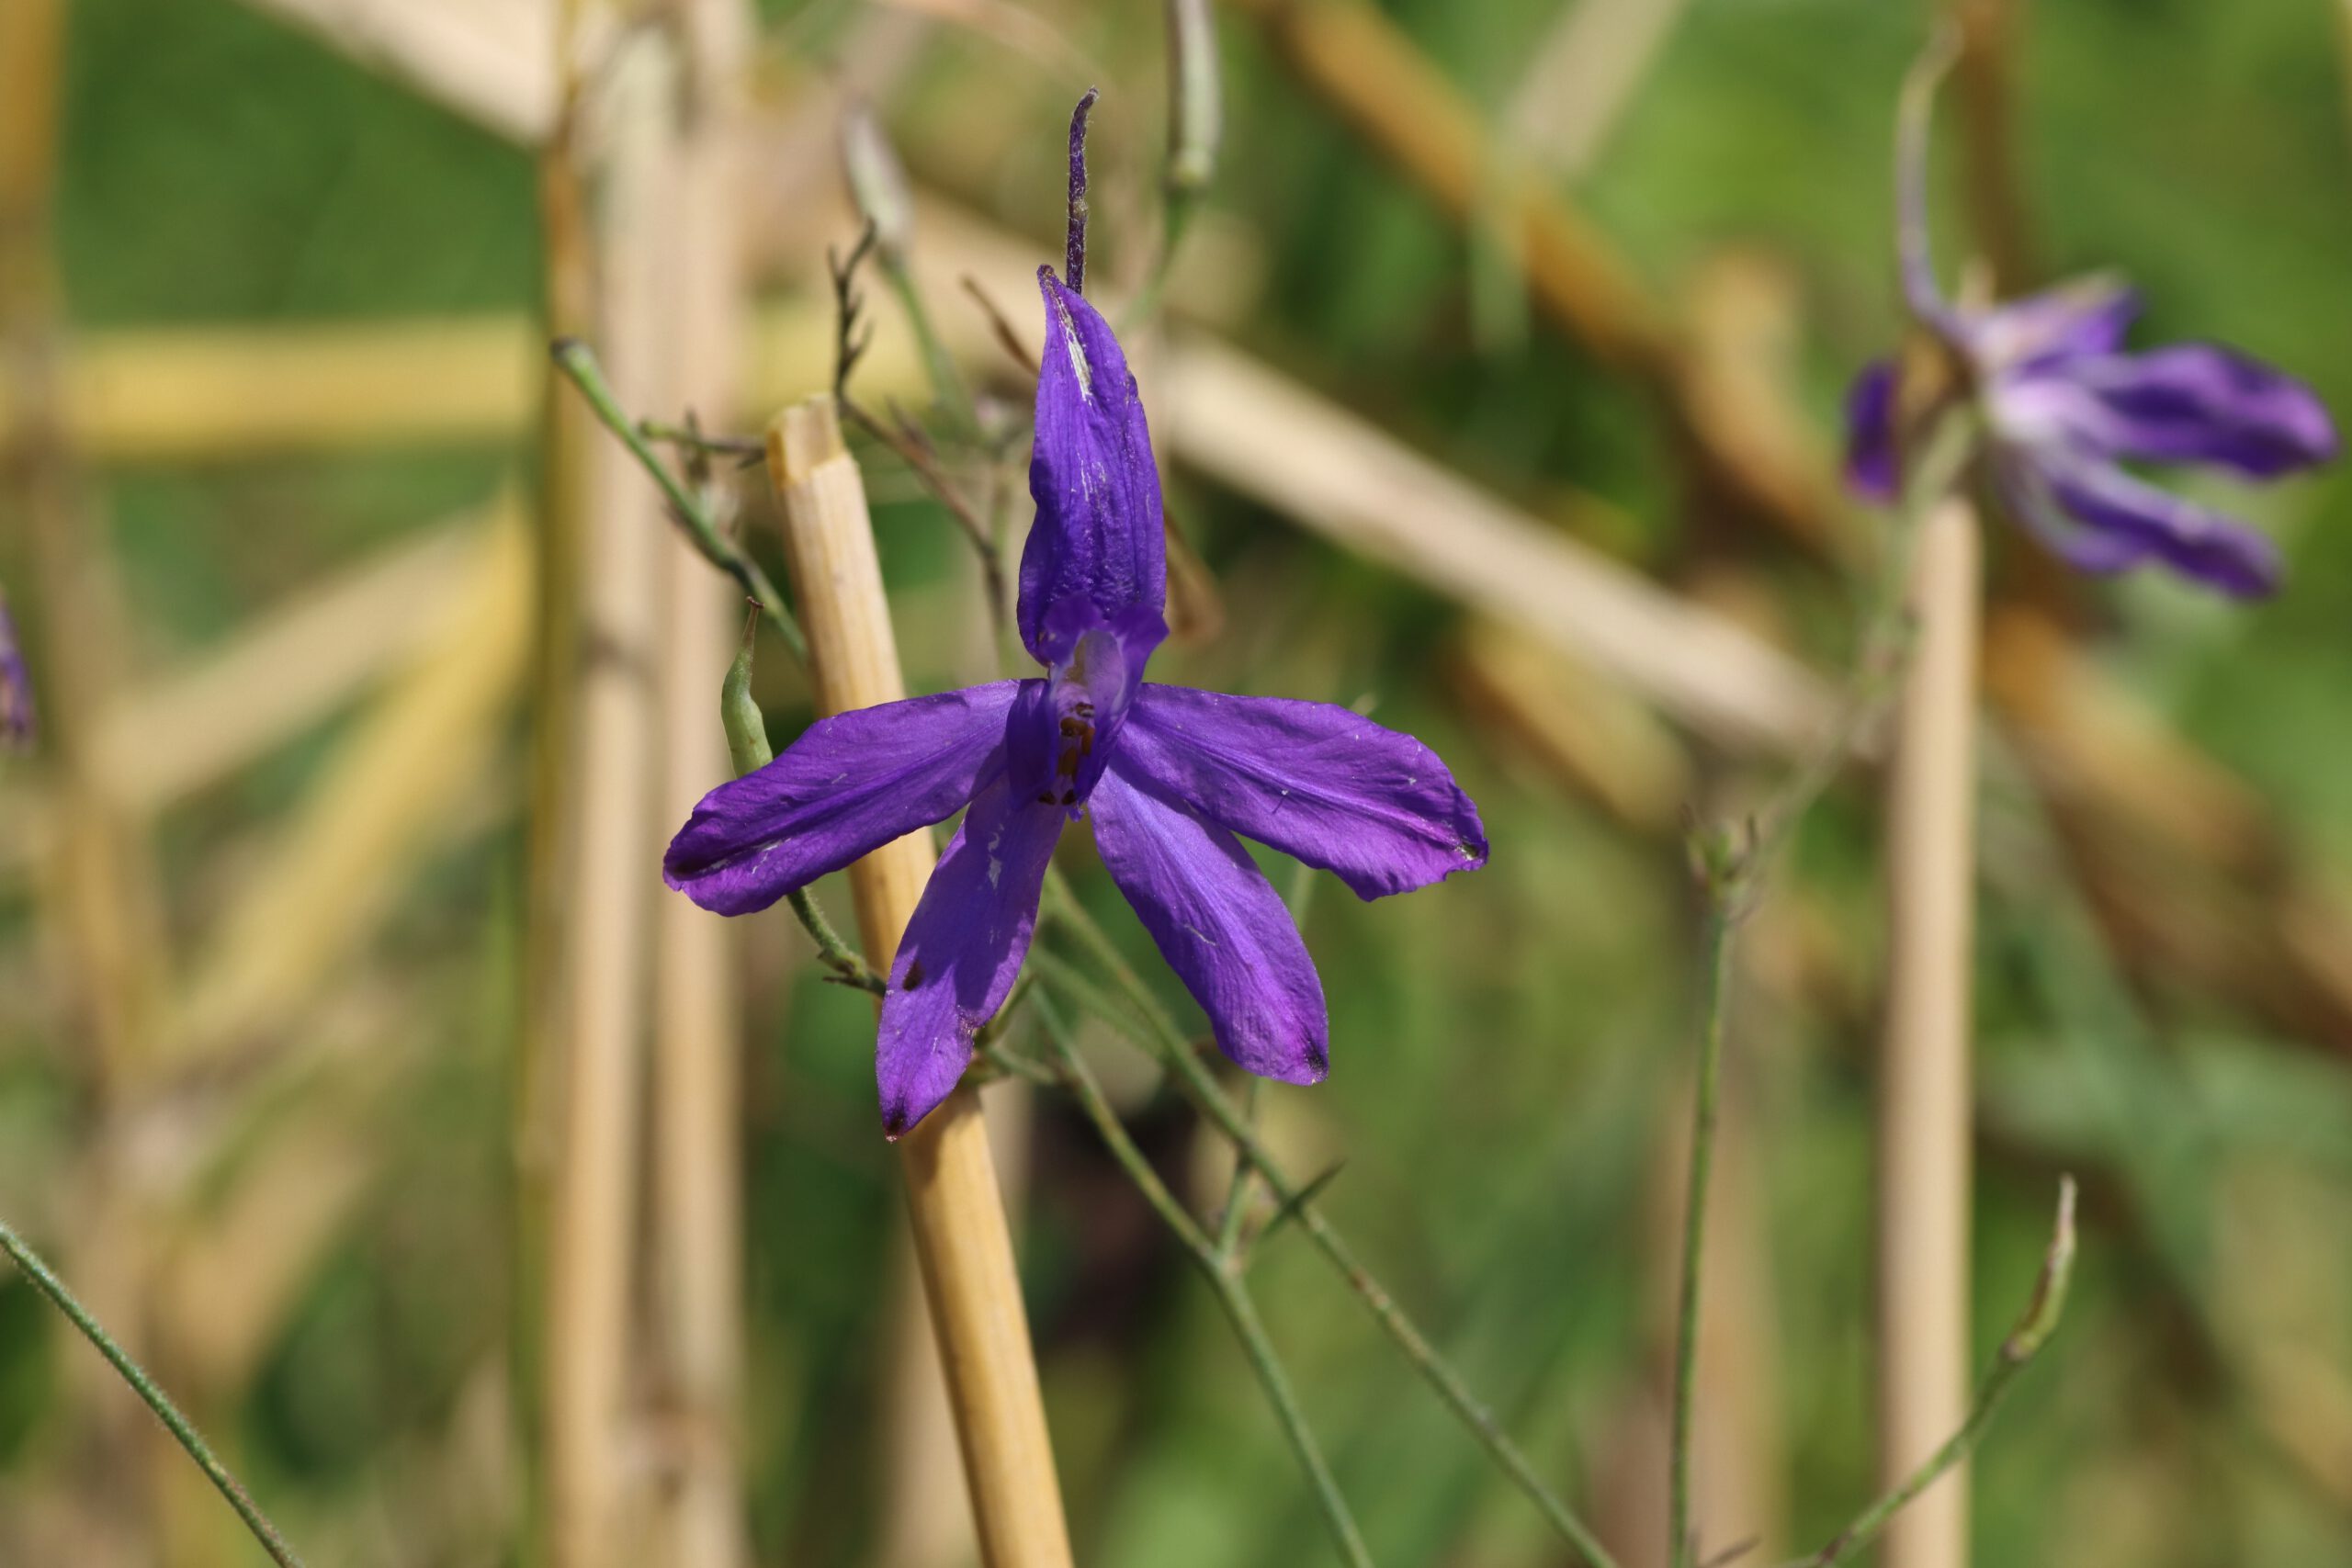 Die violett gefärbte Blüte des Acker-Rittersporn, die zygomorph aufgebaut sind.